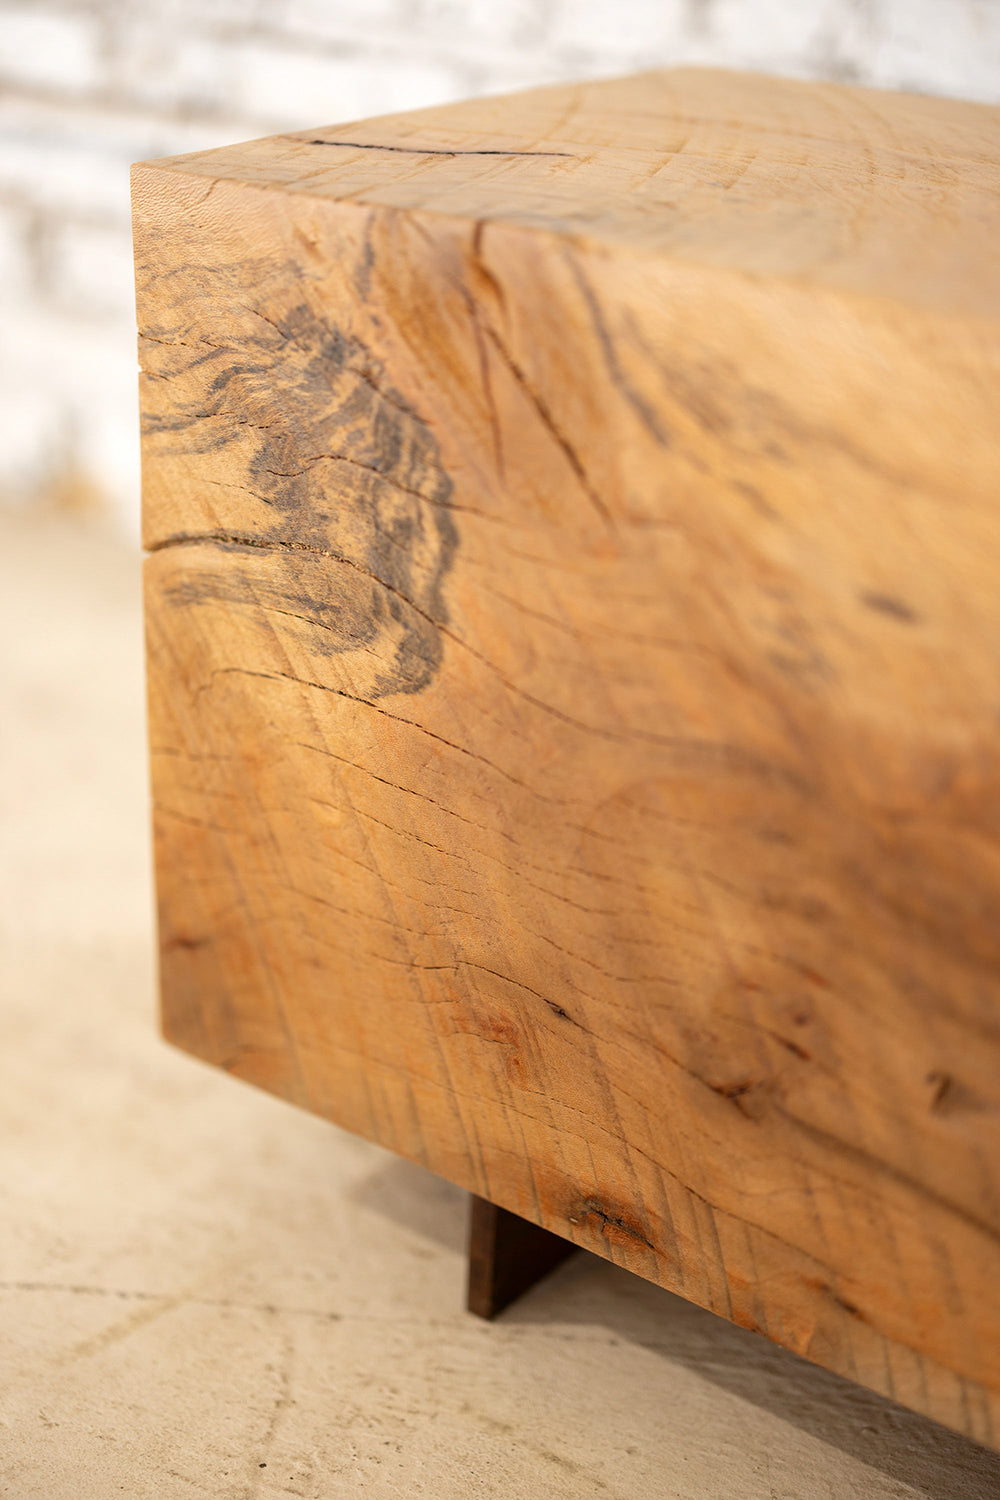 Hardwood Beam Bench | Rustic Reclaimed Wood Bench Beech Corten Legs